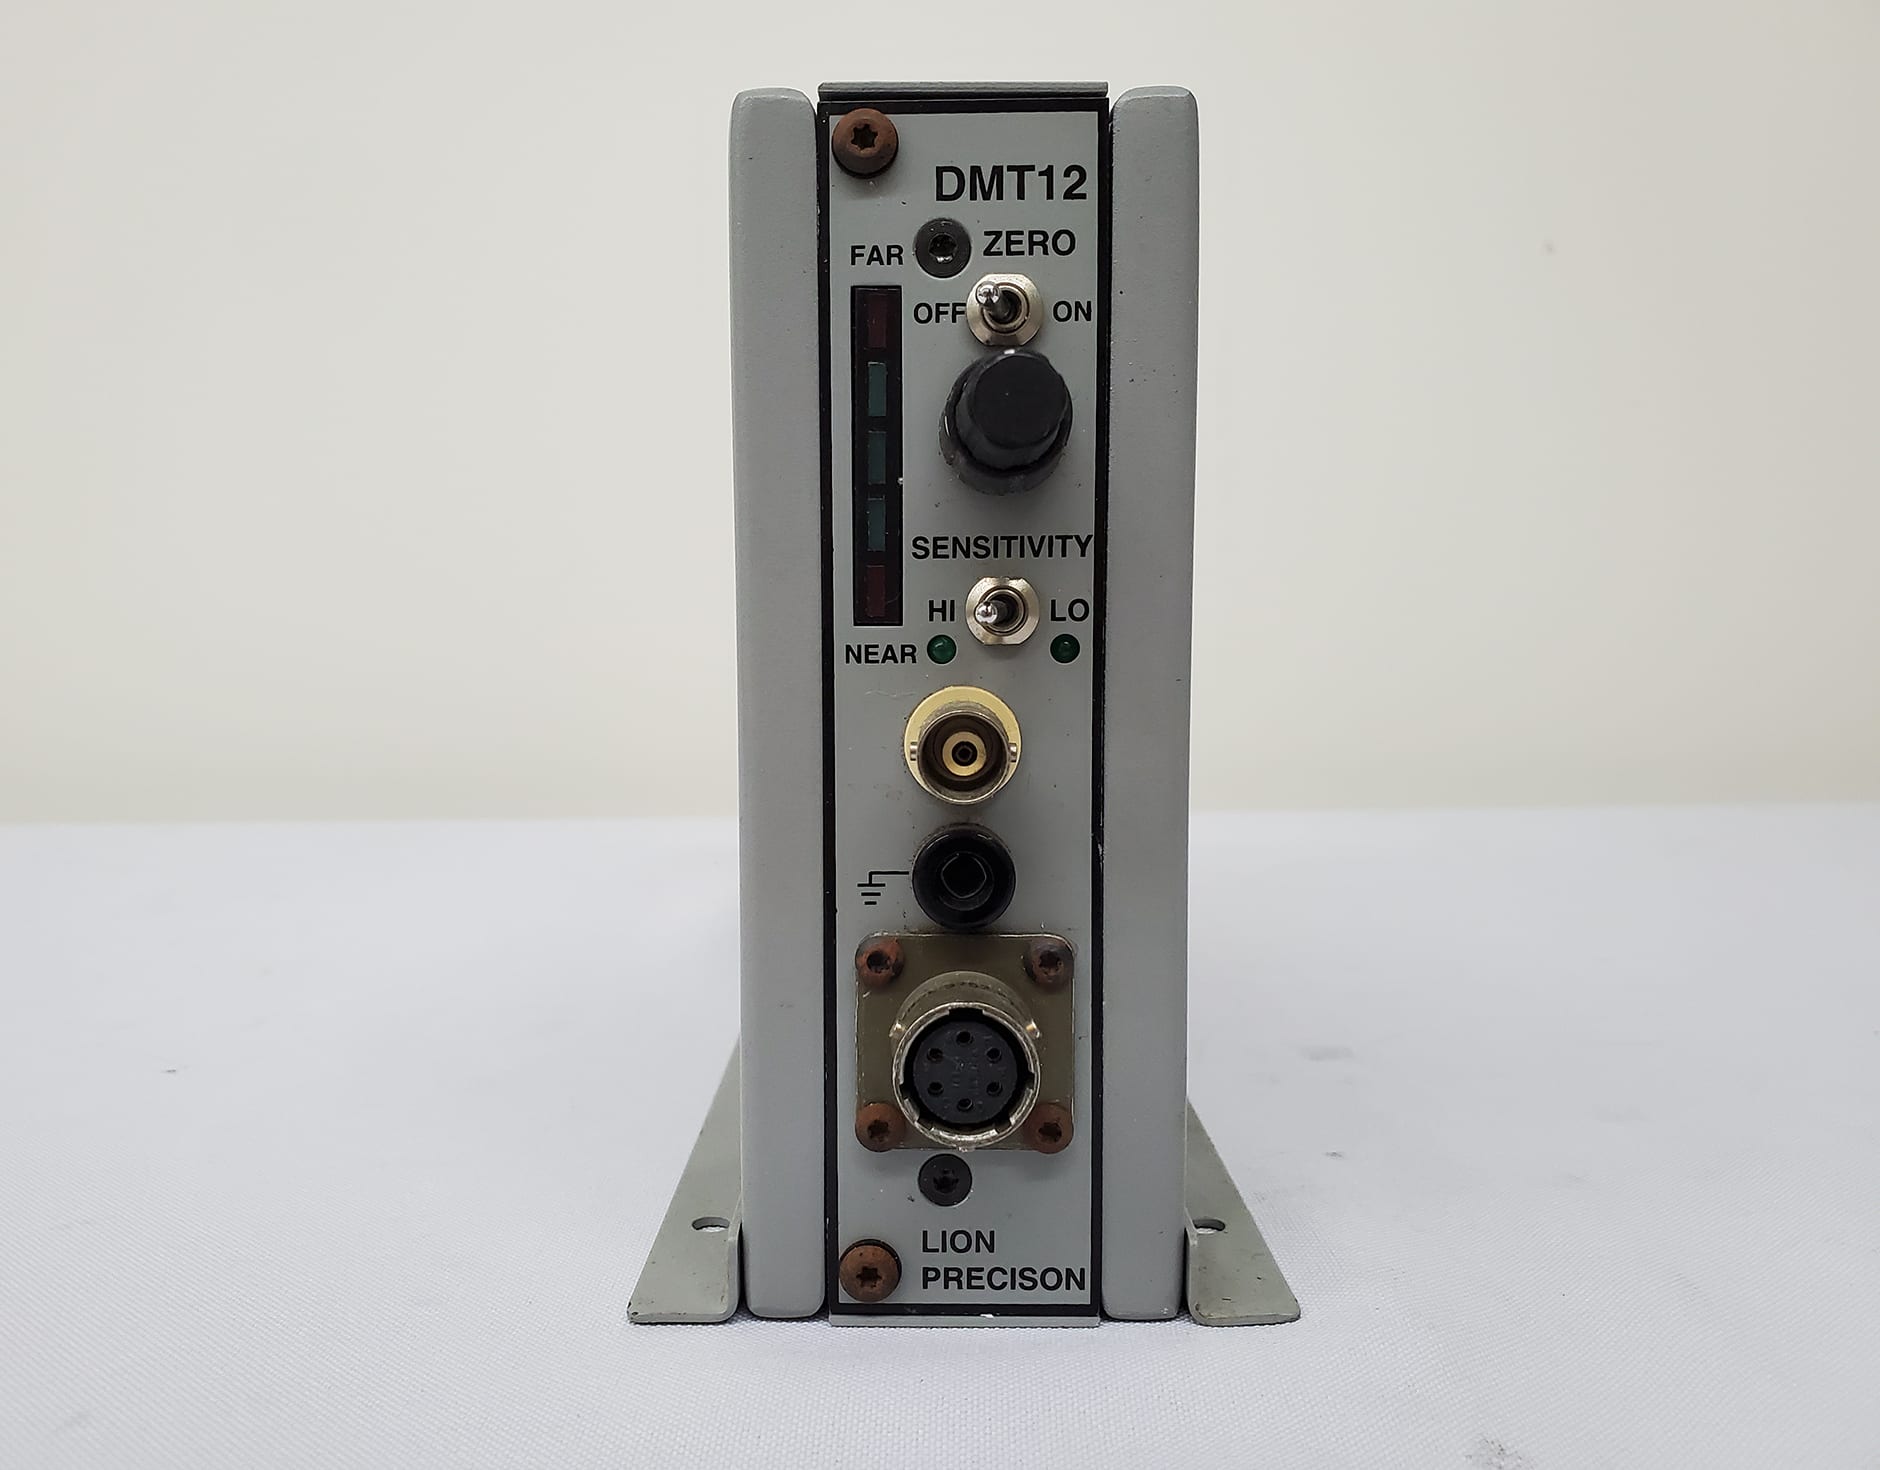 Lioni Precision-DMT 12-Dual Range Sensitivity Probe Driver Module-58725 For Sale